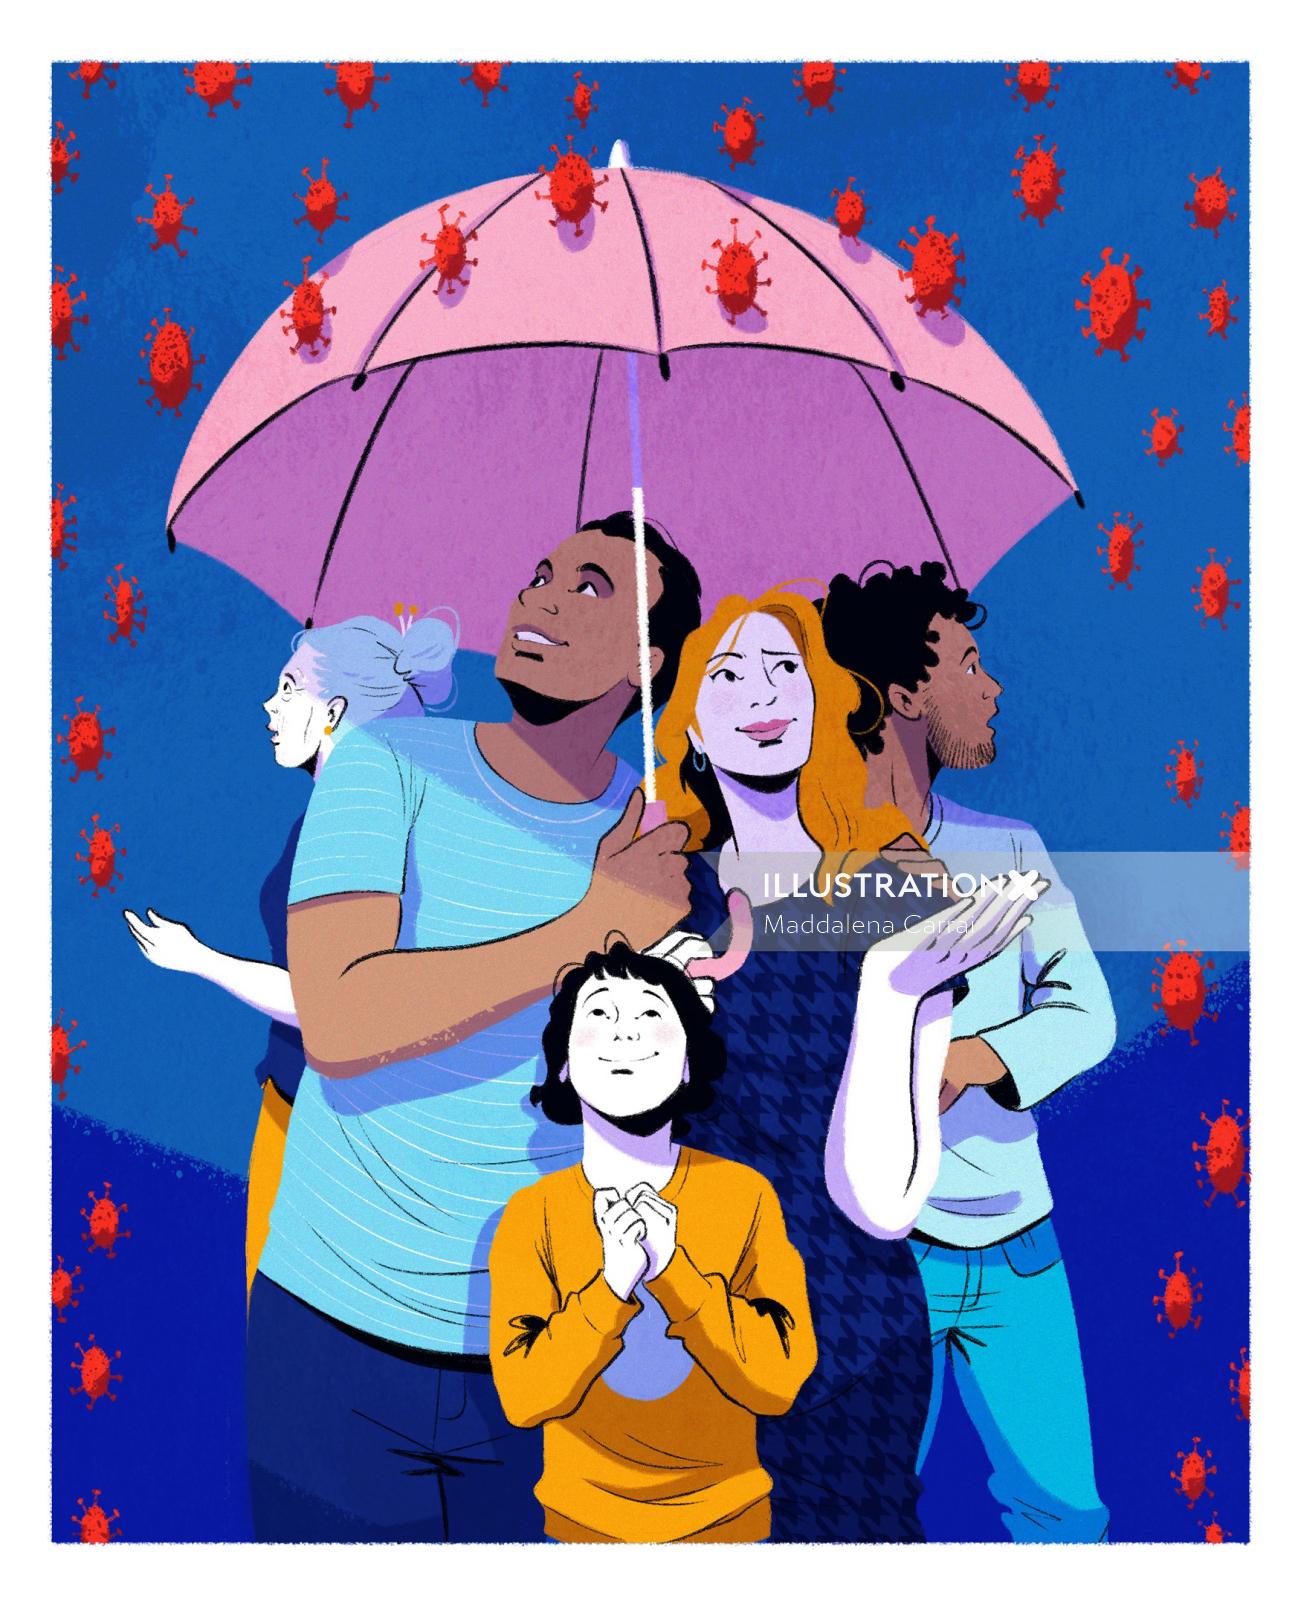 Children under umbrella